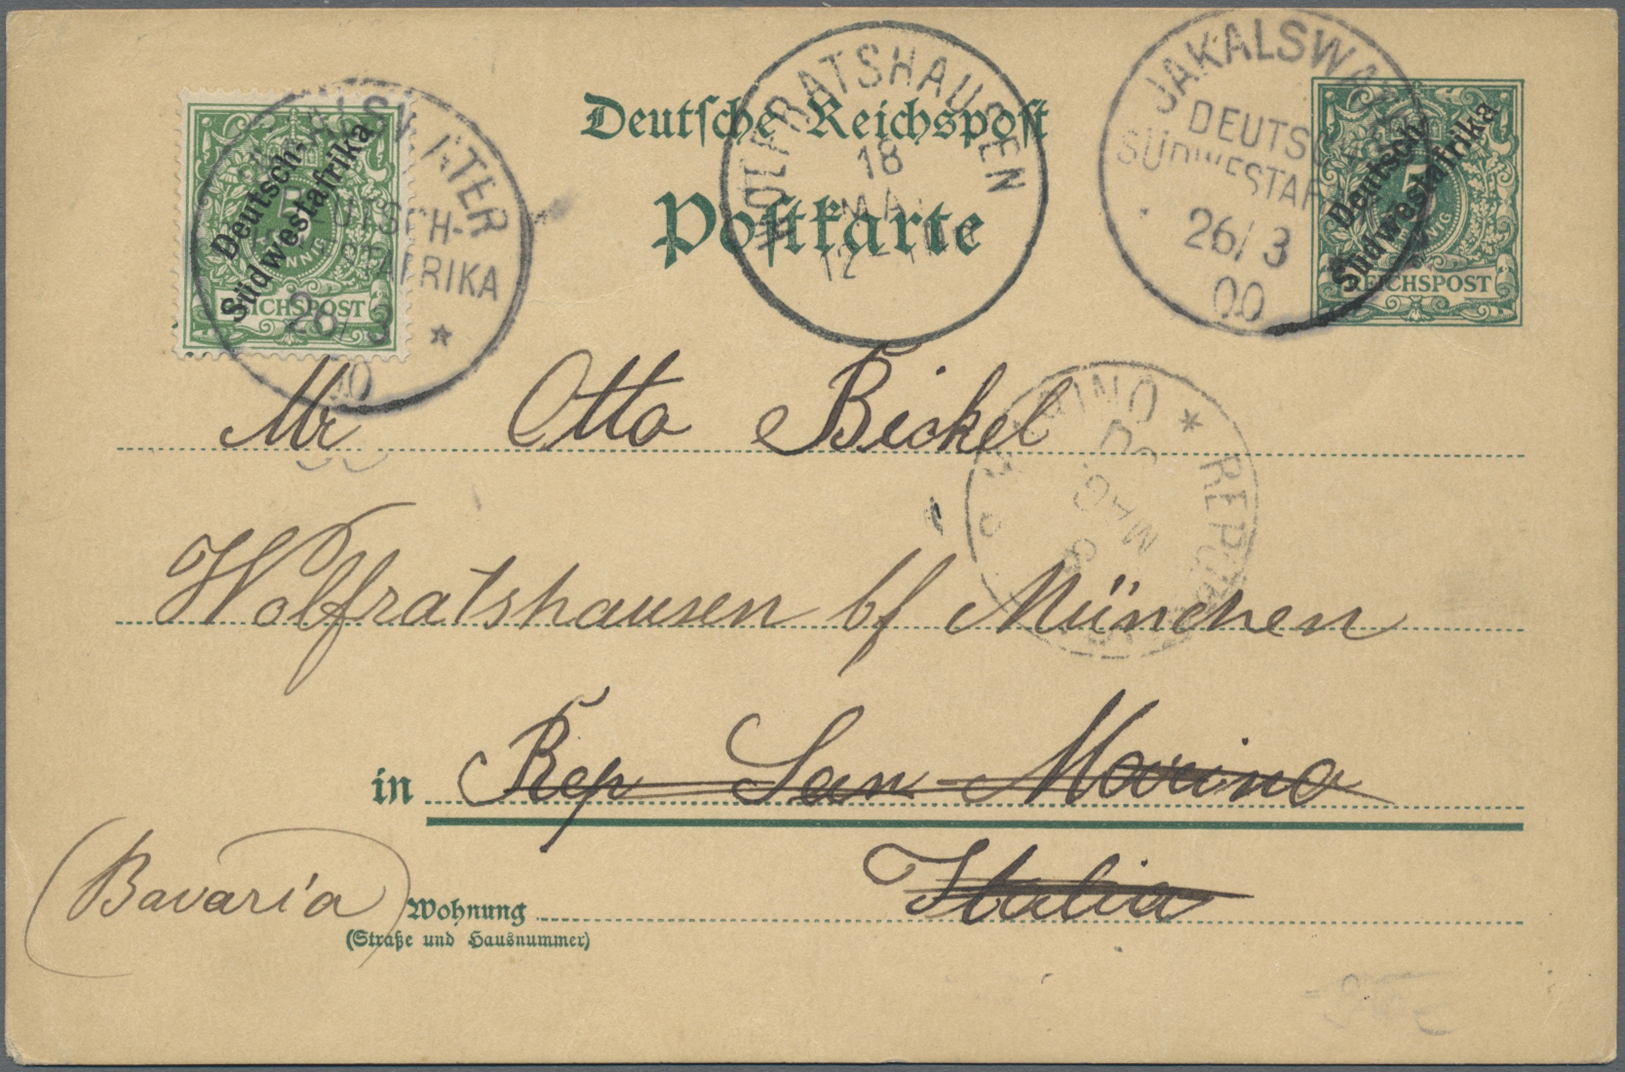 O/GA/Br/Brfst Deutsche Kolonien: 1896 - 1915 (ca.), Album mit besseren Belegen, dabei Vorläufer, gute Stempel, Ein